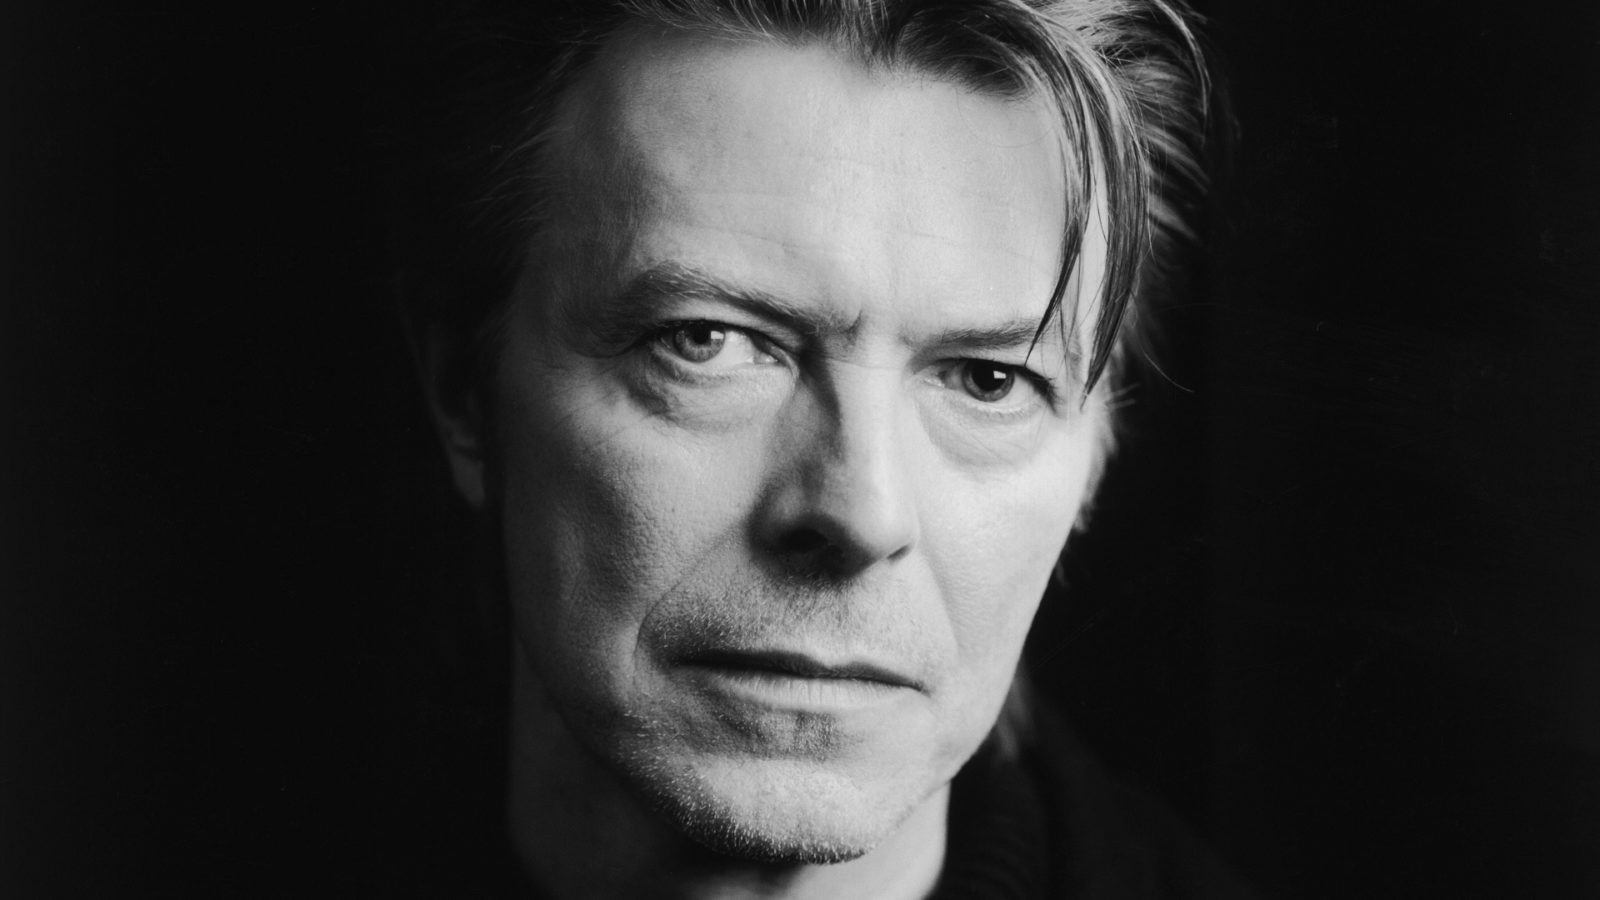 Les 75 livres indispensables recommandés par David Bowie